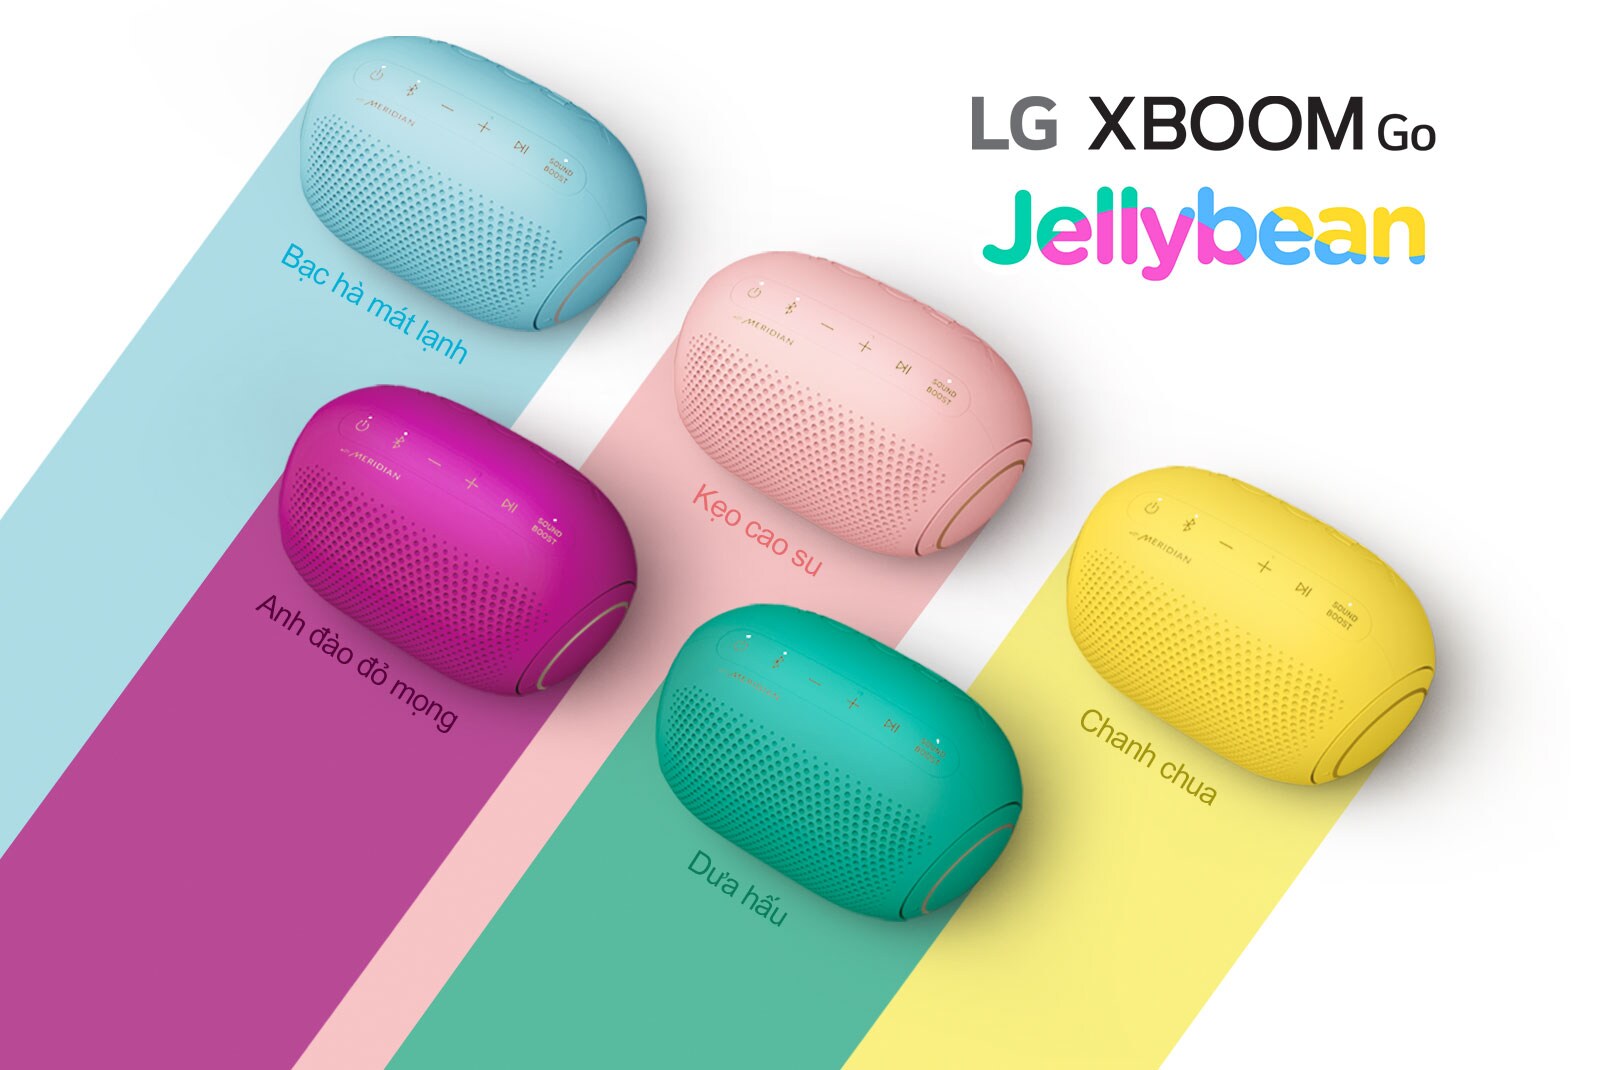 Năm màu của dòng LG XBOOM Go PL2 Jellybean đặt trên nền trắng.